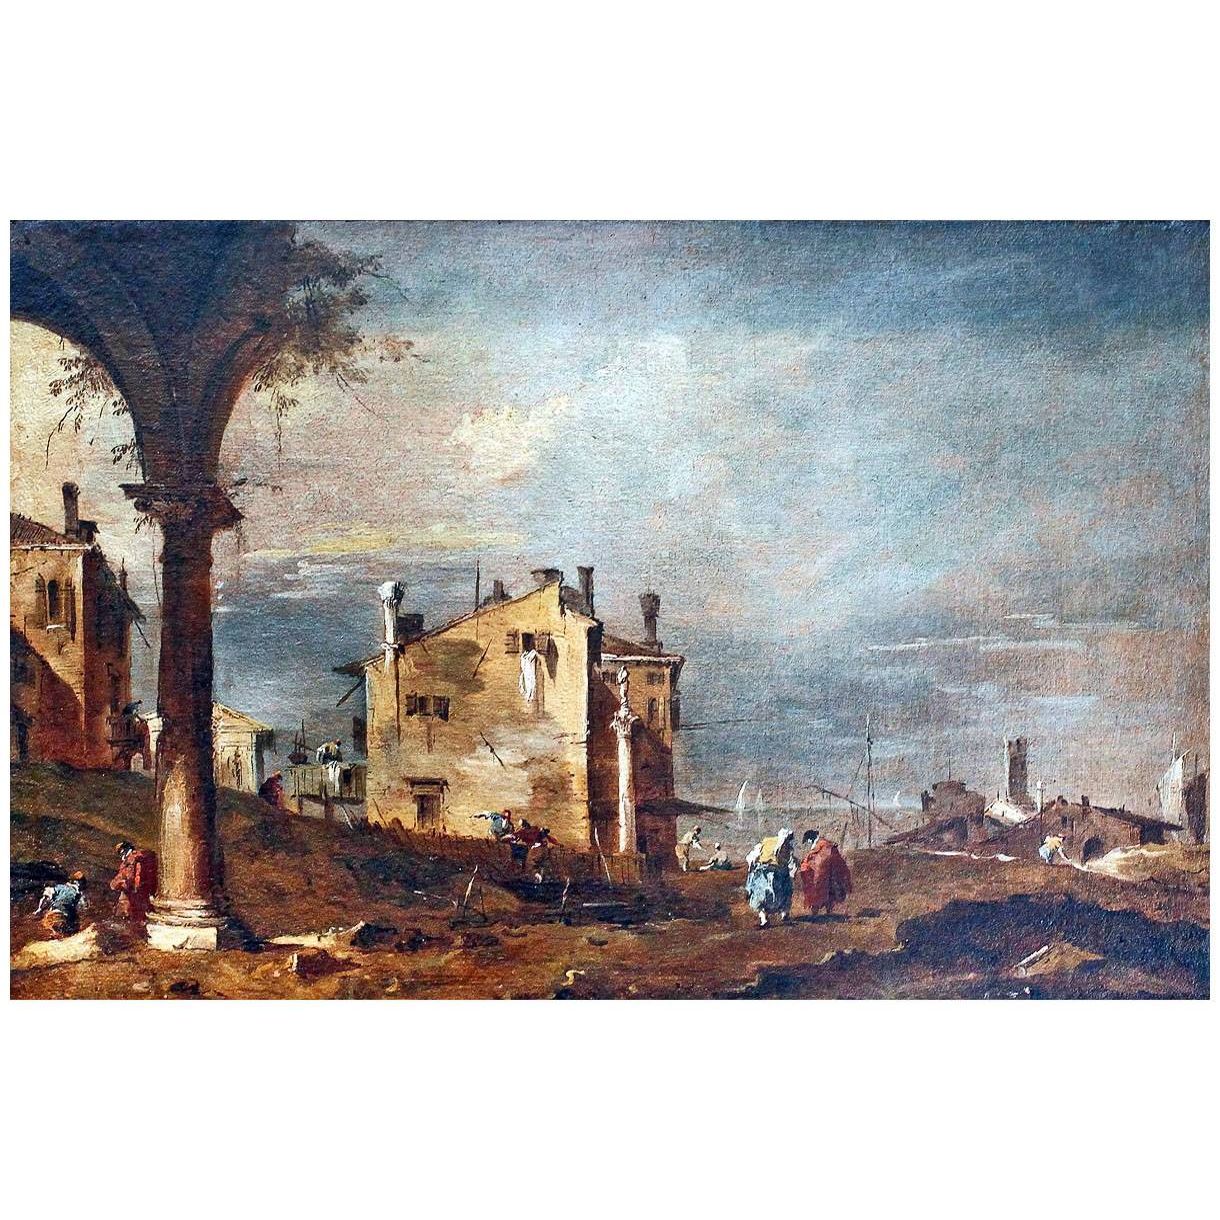 Francesco Guardi. Rovine dell'arco e case sulla laguna. 1750. Castelvecchio Verona